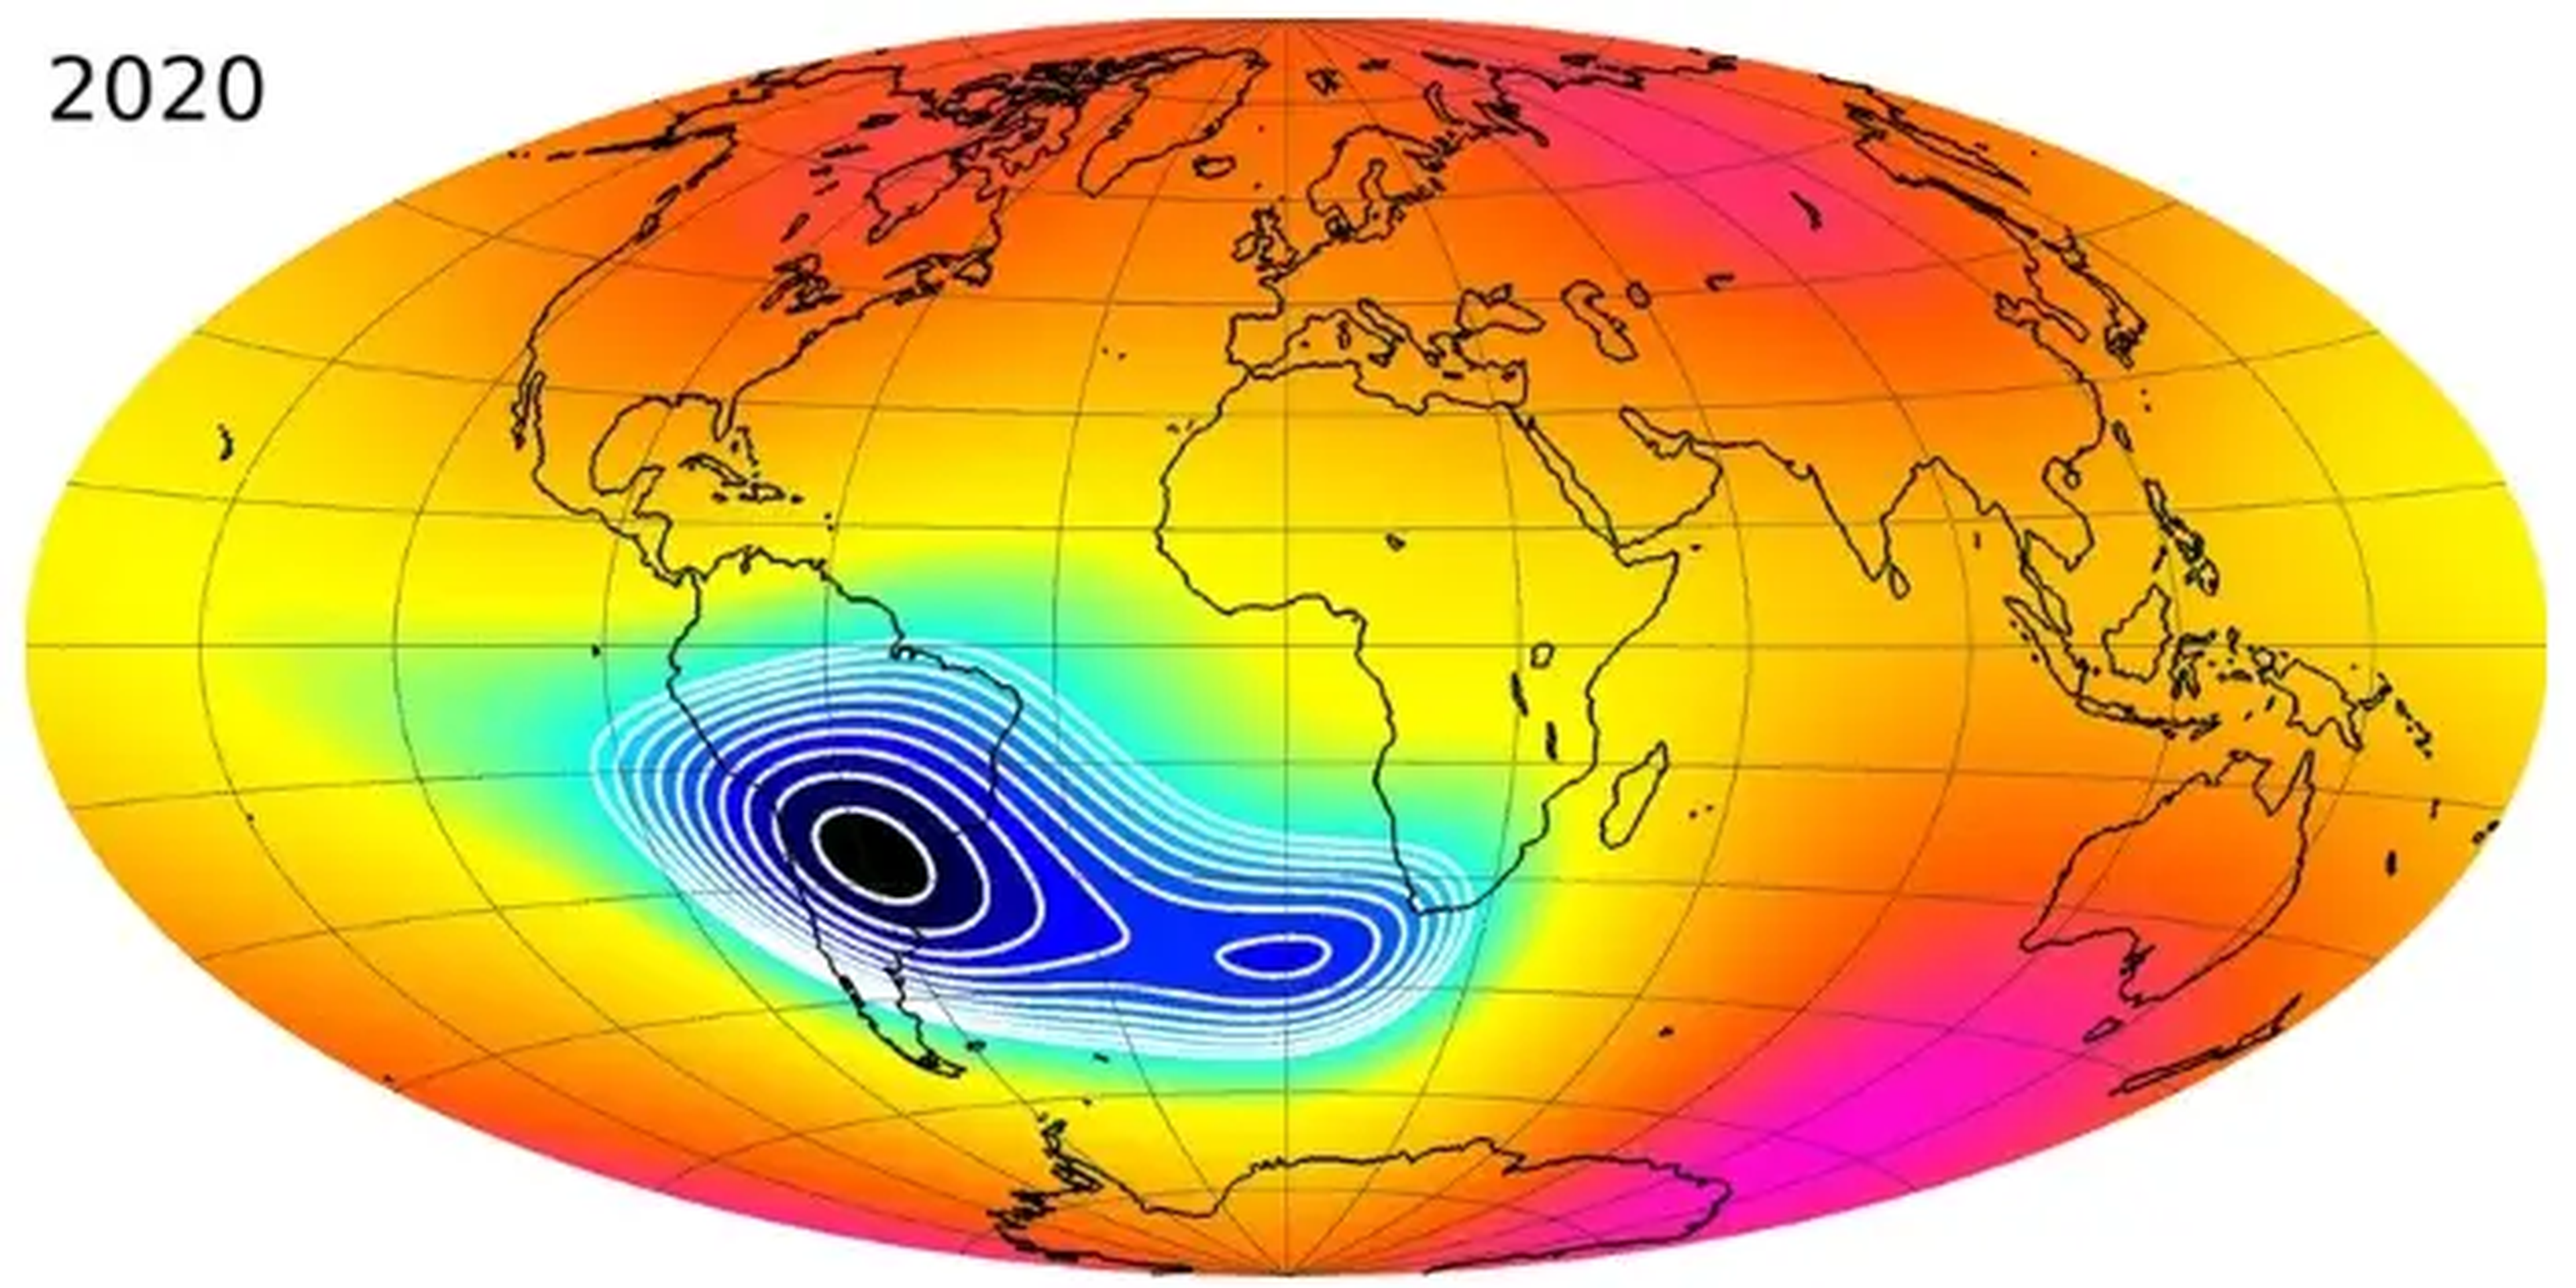 Intensidad del campo magnético terrestre en 2020, medida por los satélites SWARM de la Agencia Espacial Europea. En azul se destaca la zona más débil del campo magnético.